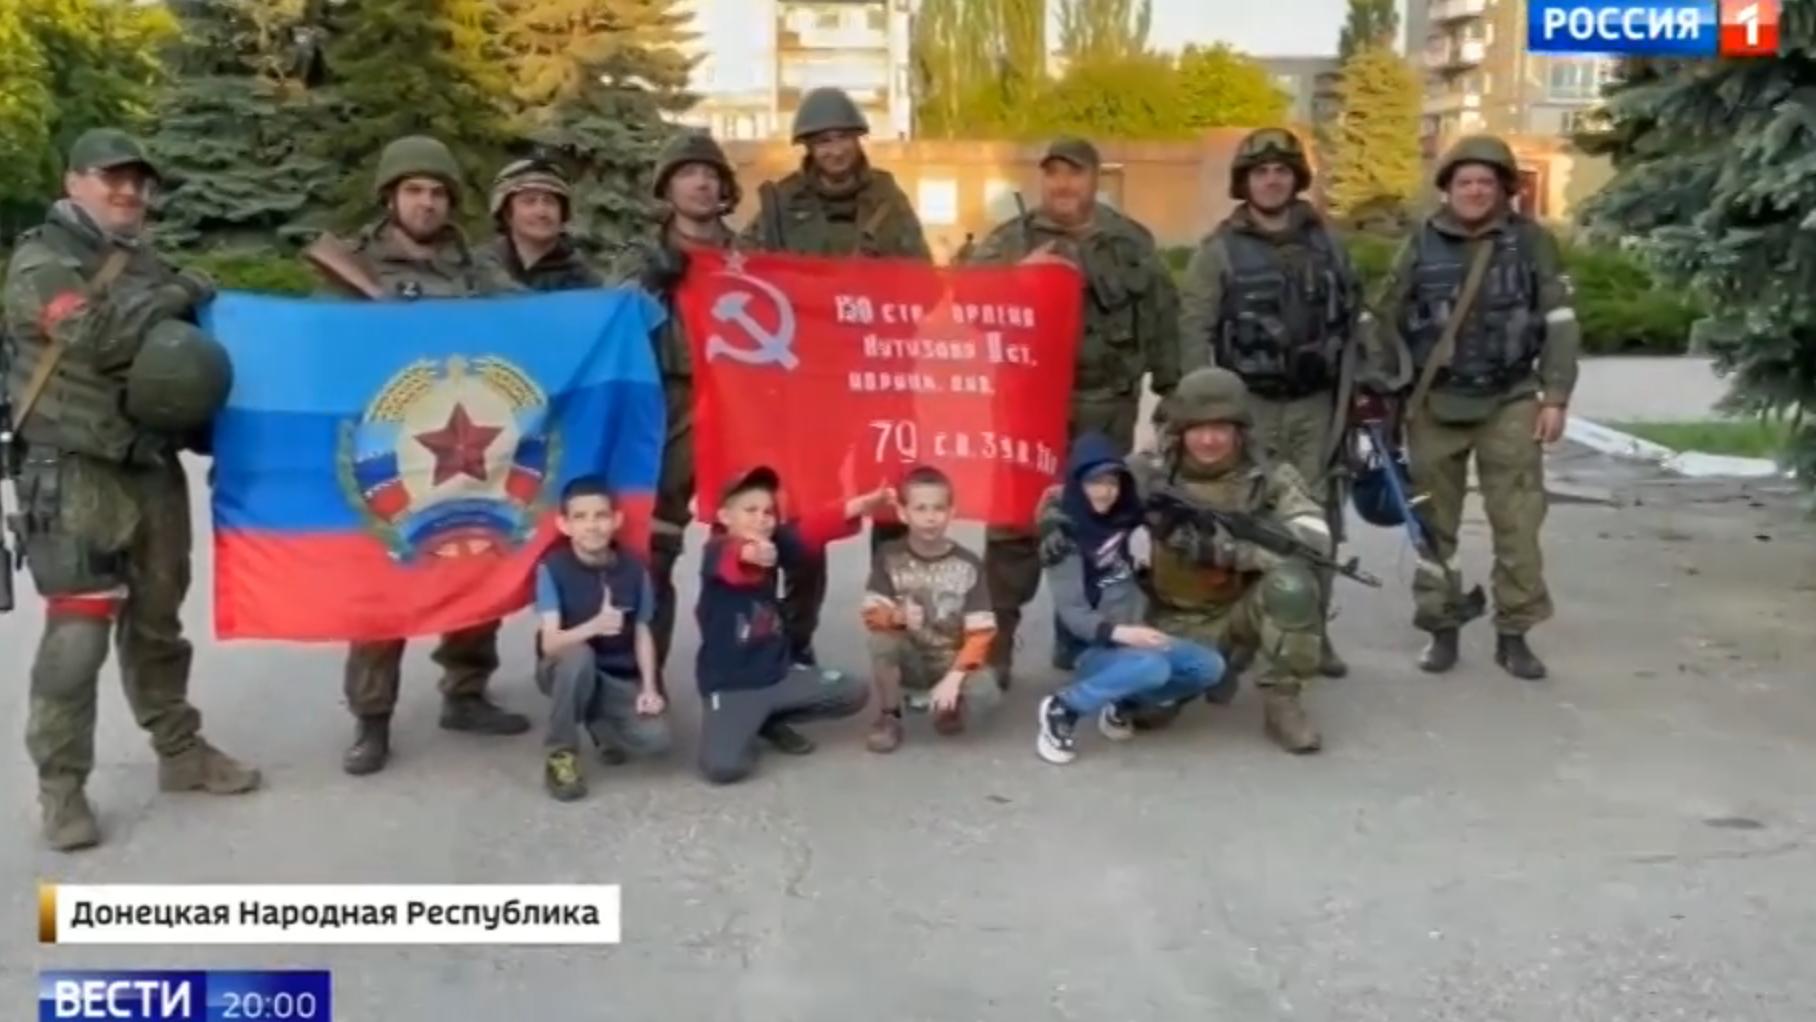 Dzieci i żołnierze pozują do zbiorowej fotografii na tle sowieckiej flagi